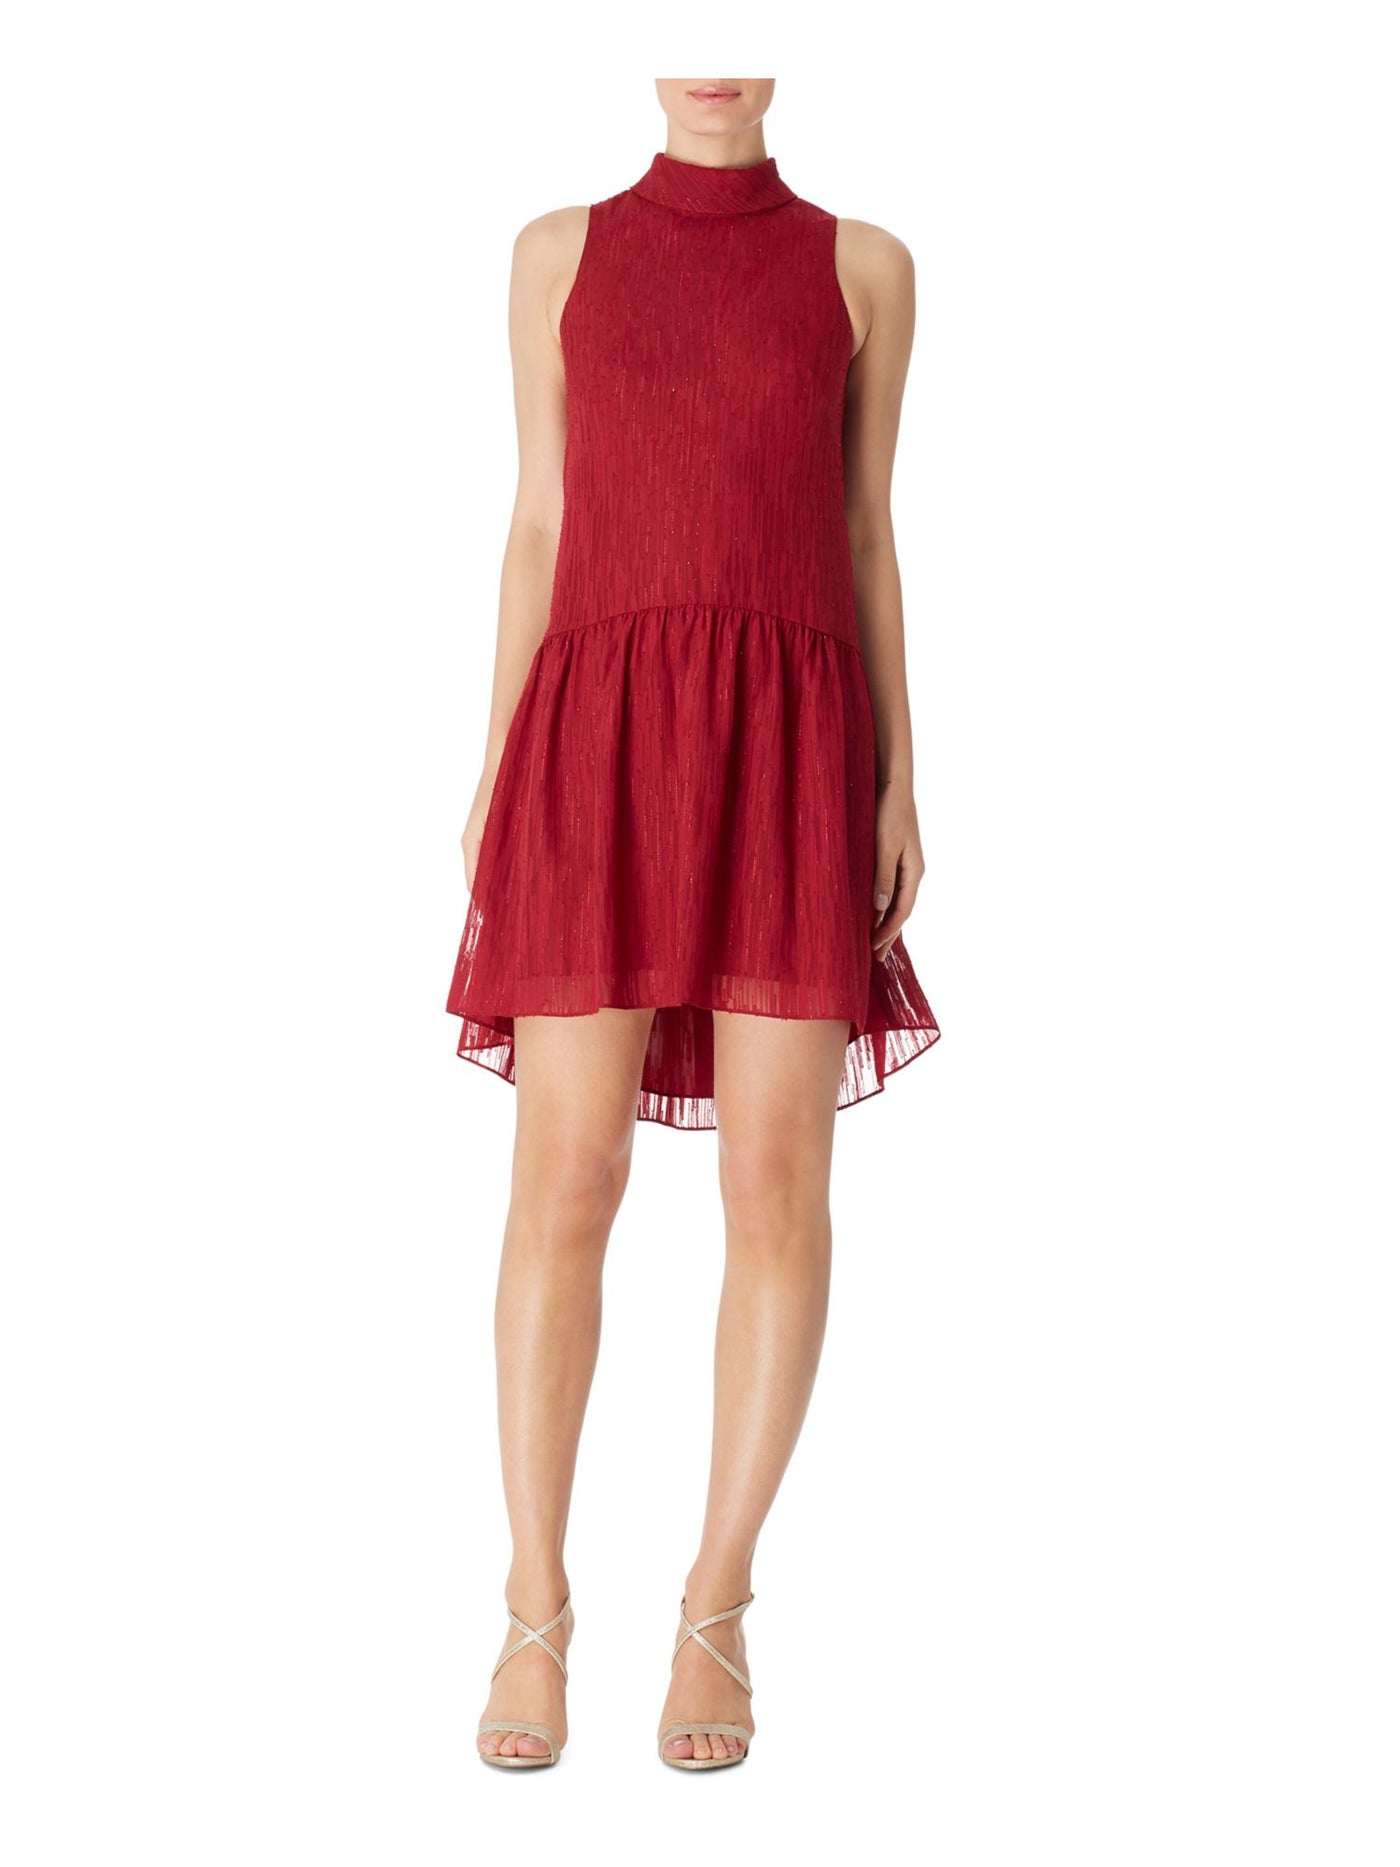 BAR III Womens Red Glitter Sleeveless Halter Short Drop Waist Dress 2